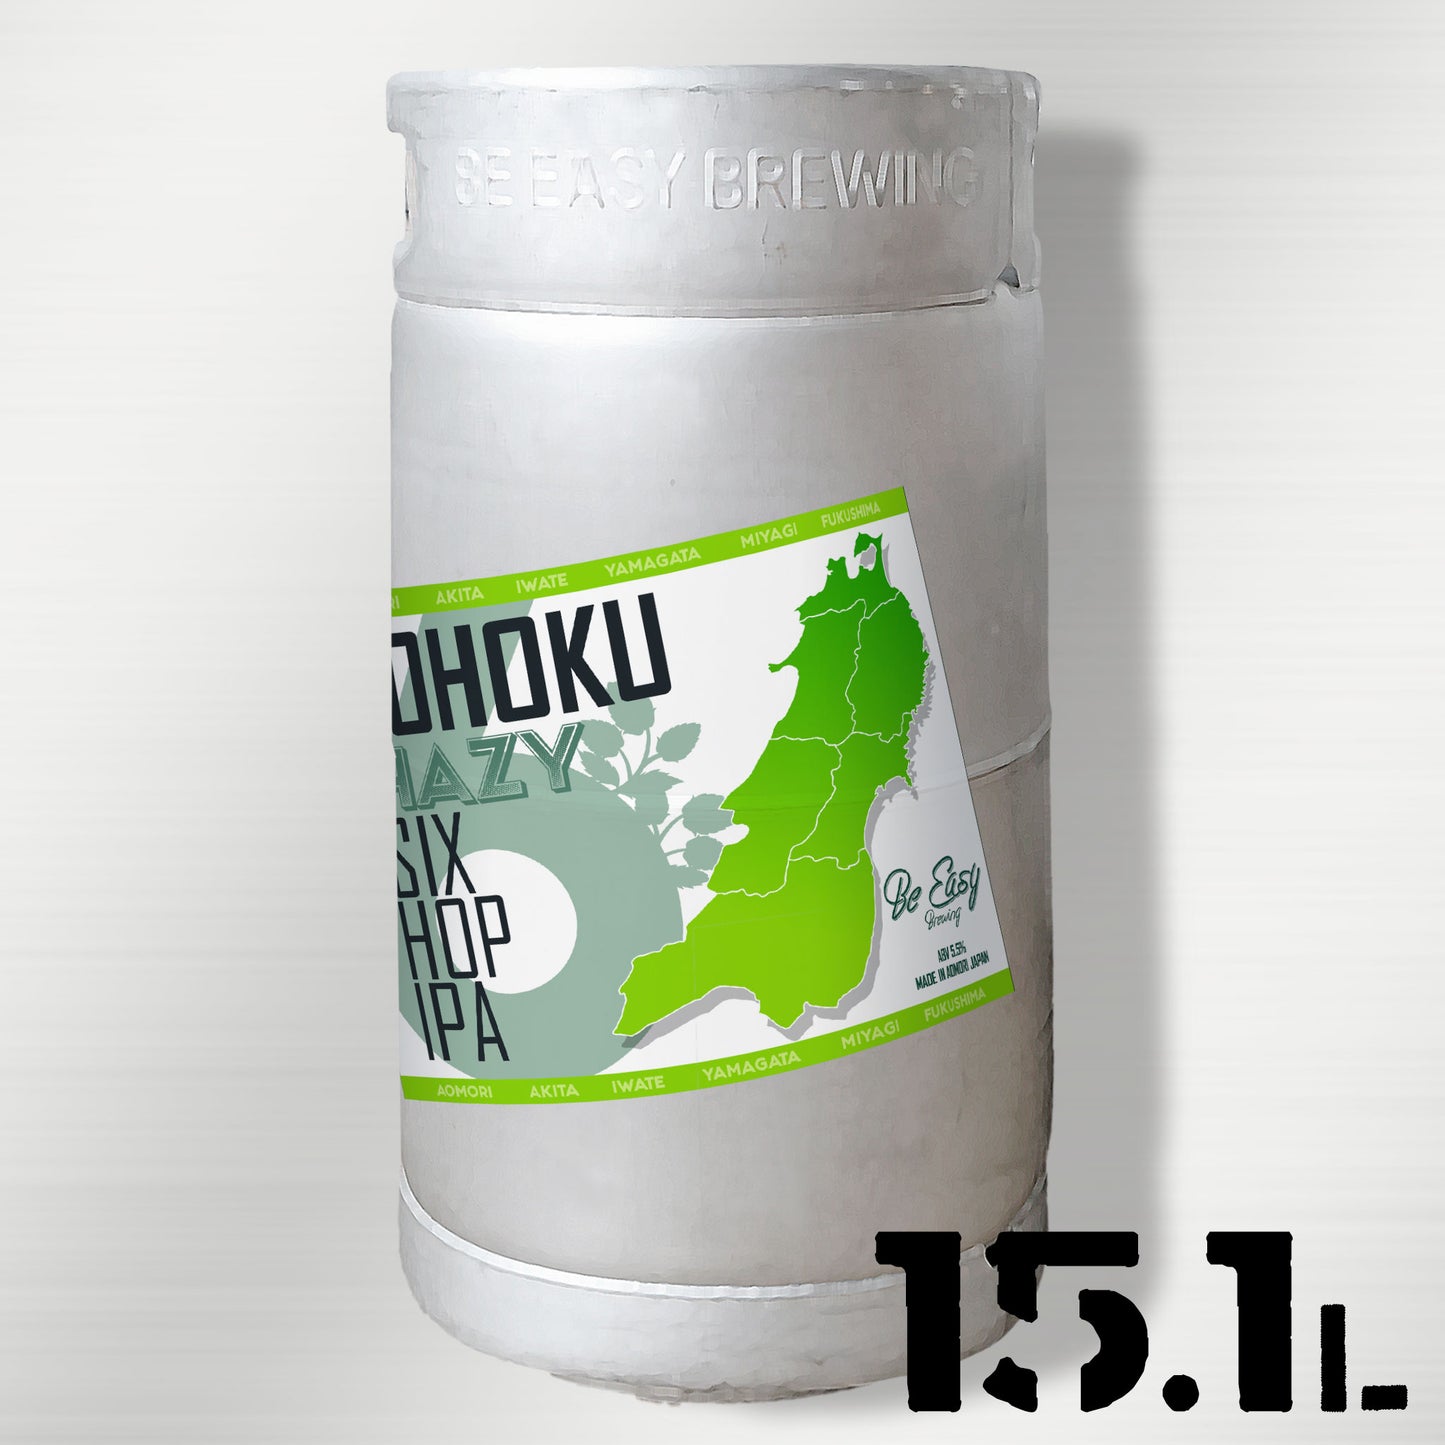 Tohoku6 Hop - Hazy IPA